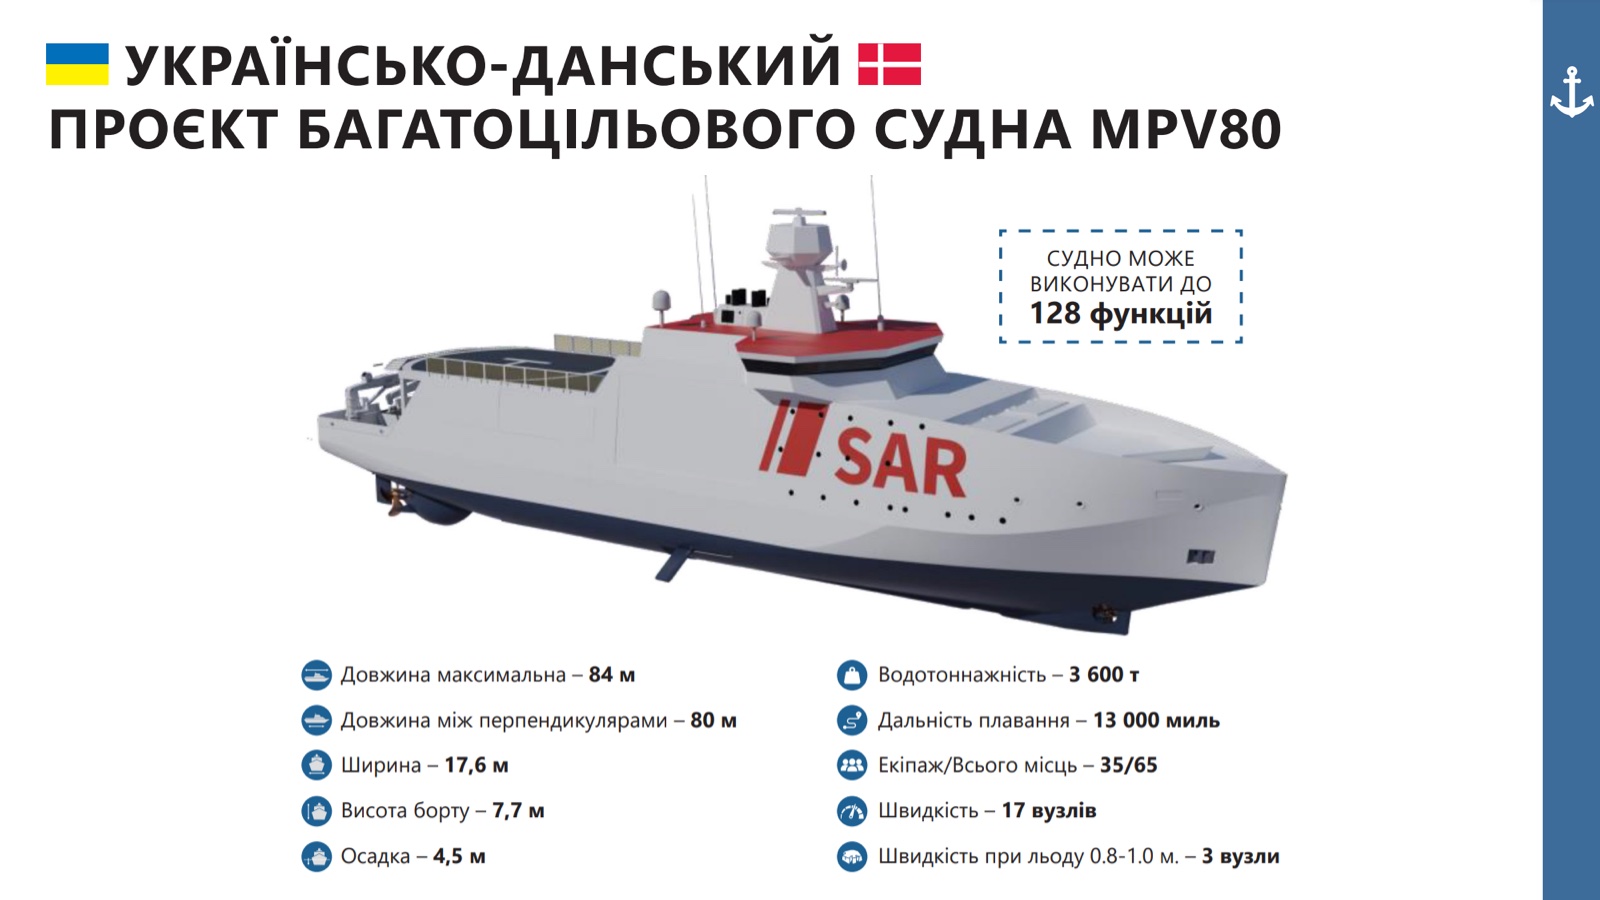 Украина и Дания договорились о строительстве судов многоцелевого назначения: фото